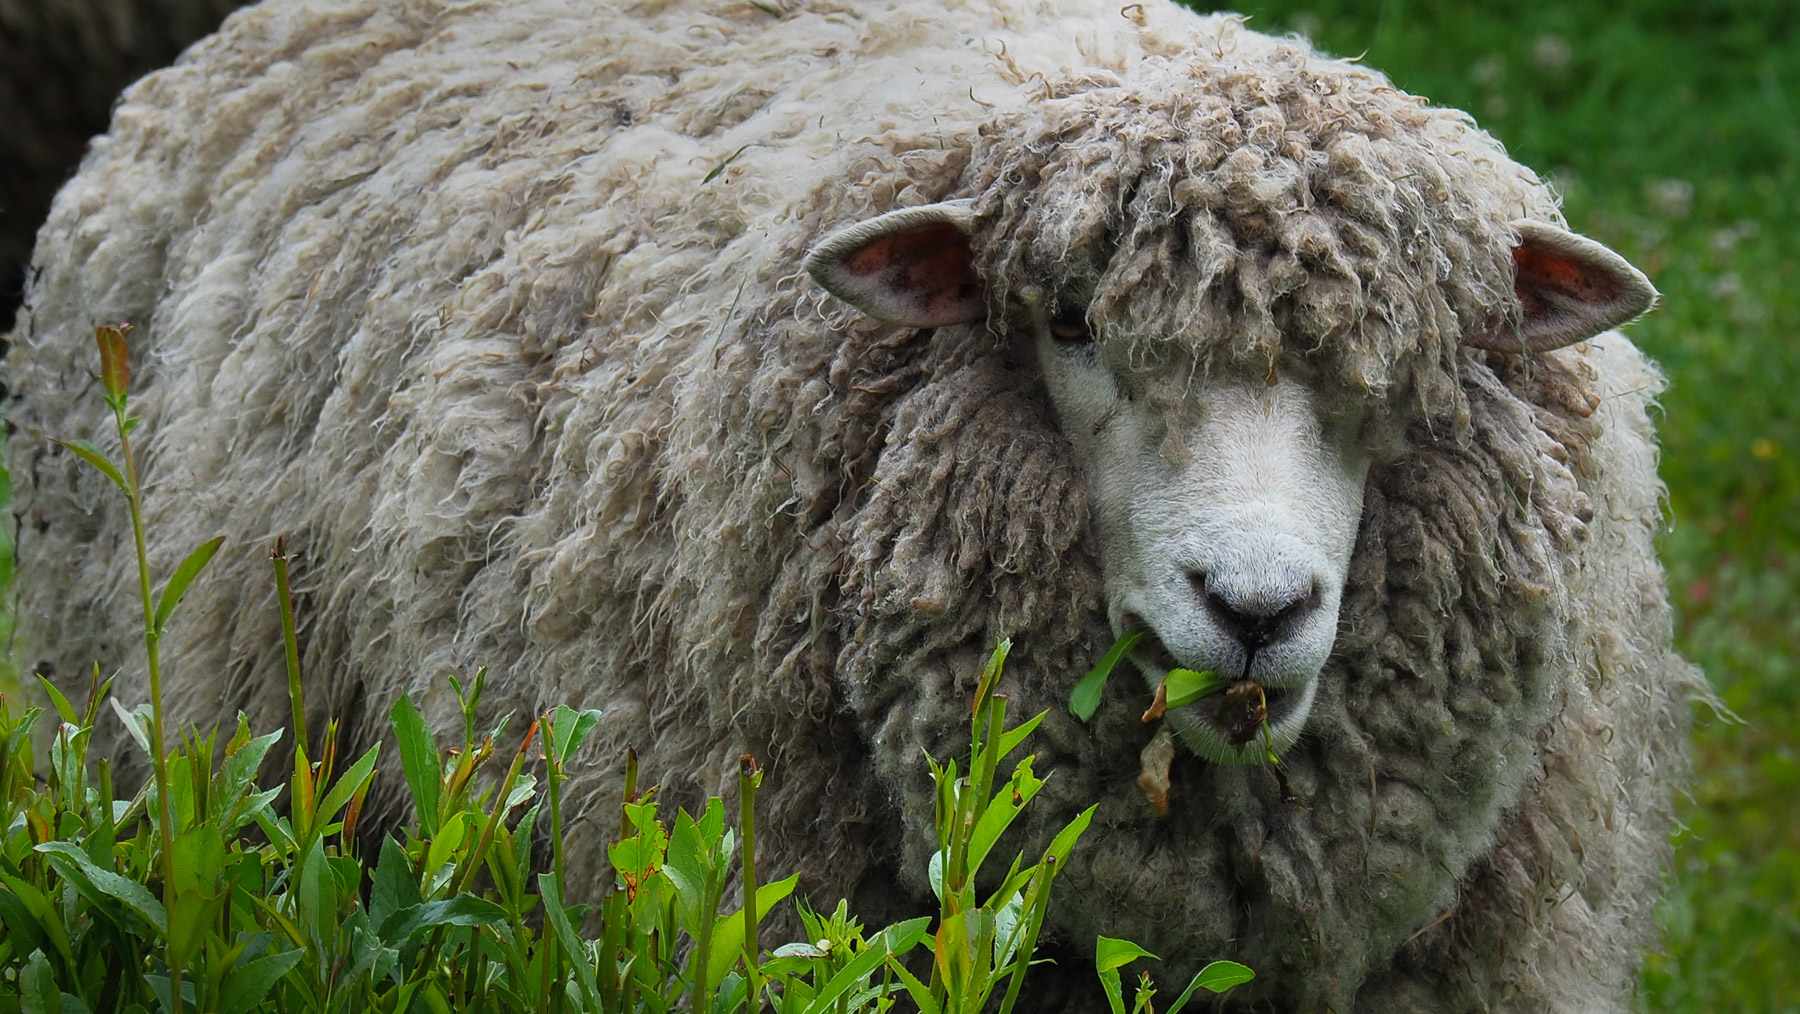 Sooo viel Wolle auf einem Schaf!